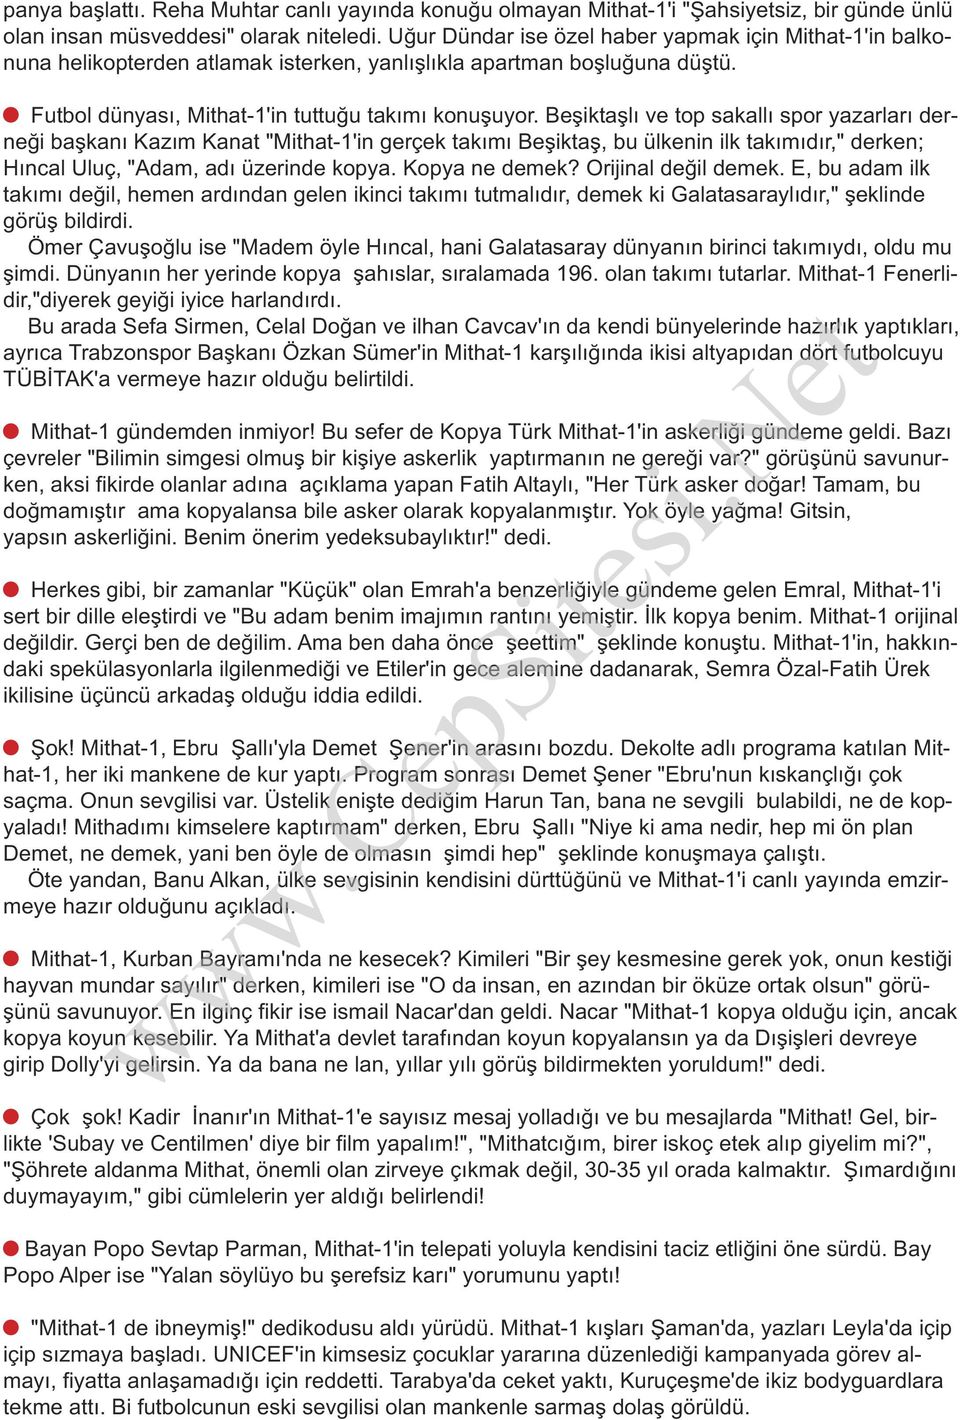 Beşiktaşlı ve top sakallı spor yazarları derneği başkanı Kazım Kanat "Mithat-1'in gerçek takımı Beşiktaş, bu ülkenin ilk takımıdır," derken; Hıncal Uluç, "Adam, adı üzerinde kopya. Kopya ne demek?